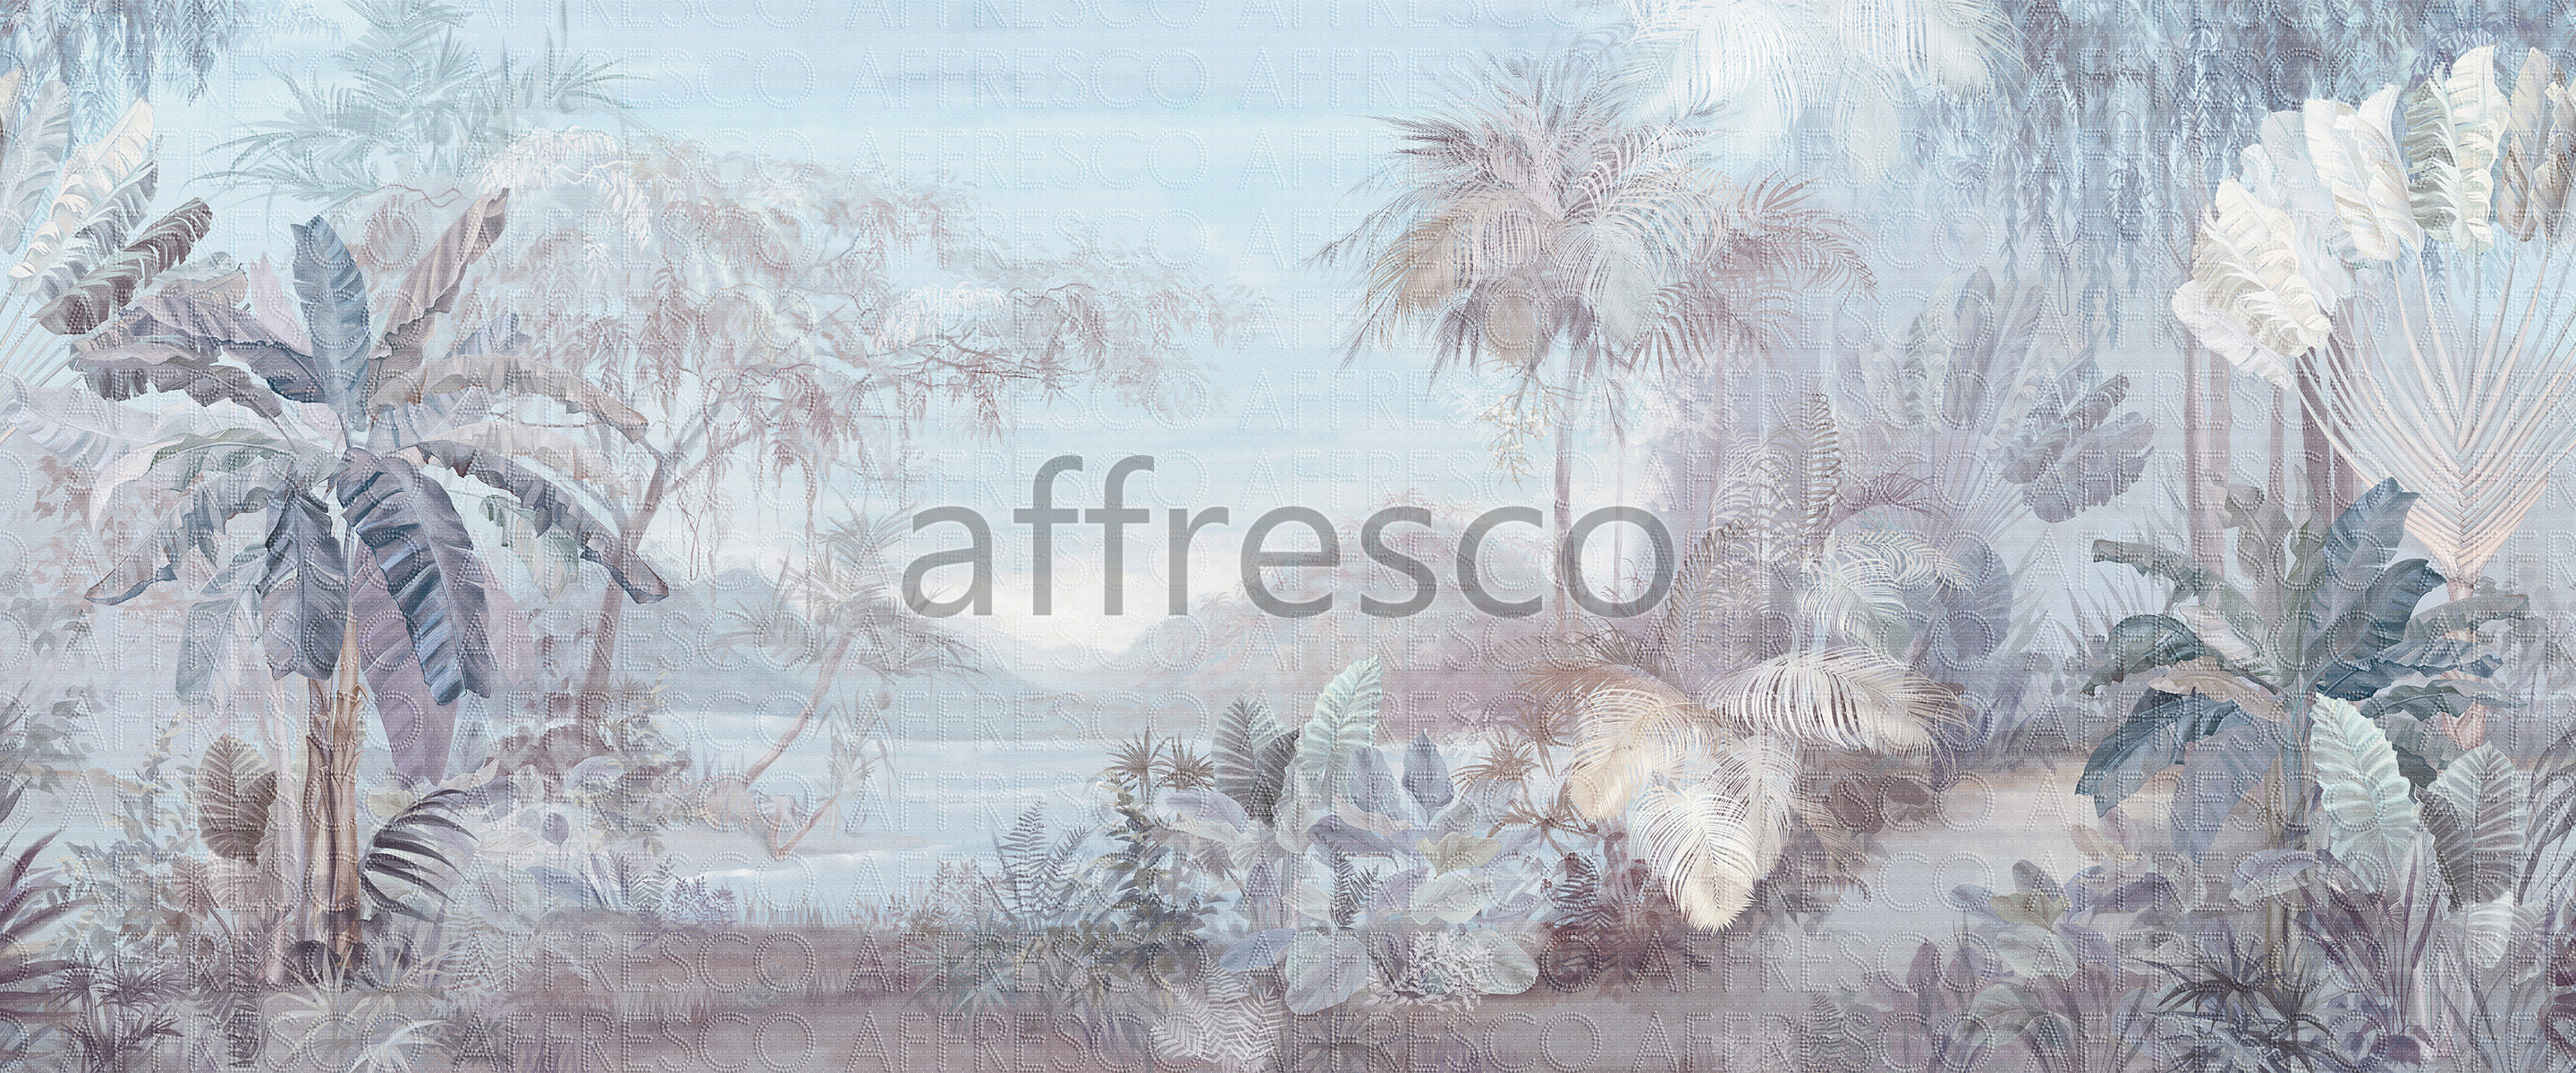 ID136028 | Tropics |  | Affresco Factory